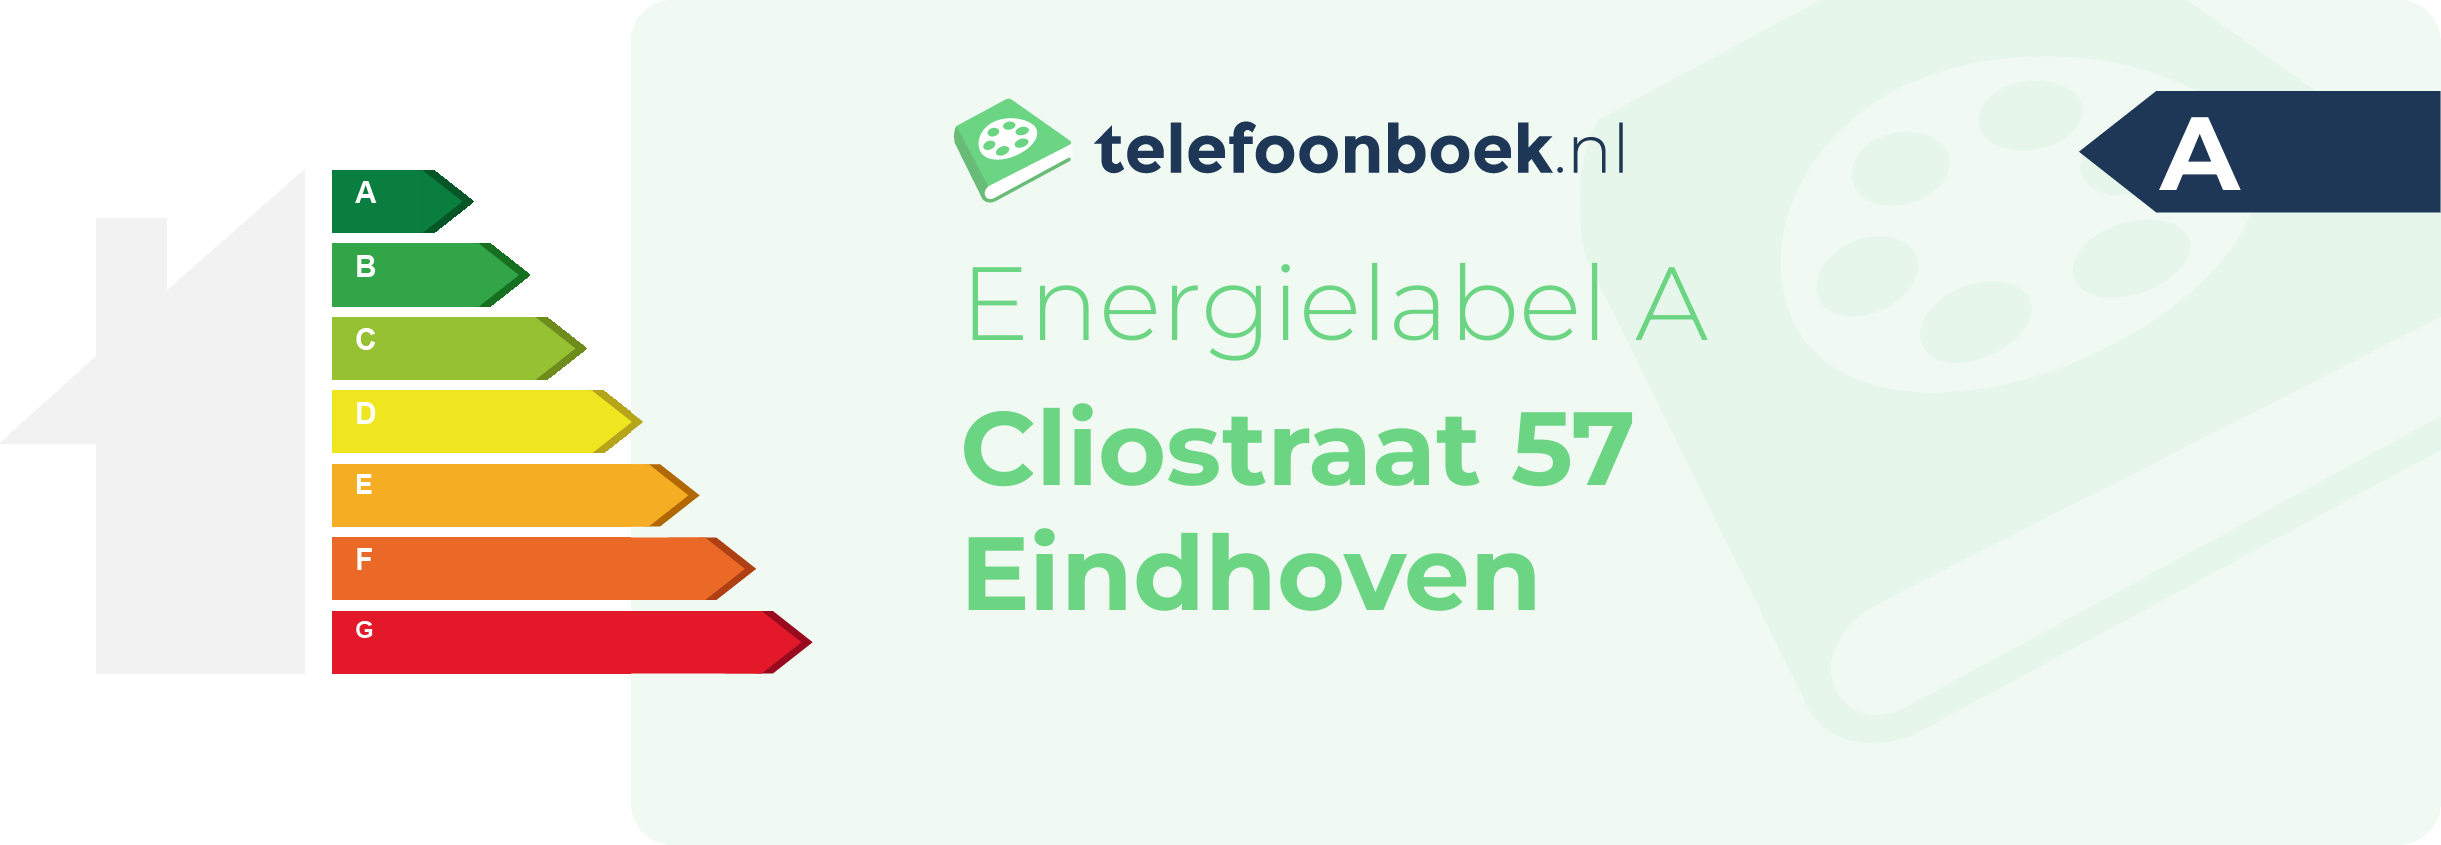 Energielabel Cliostraat 57 Eindhoven